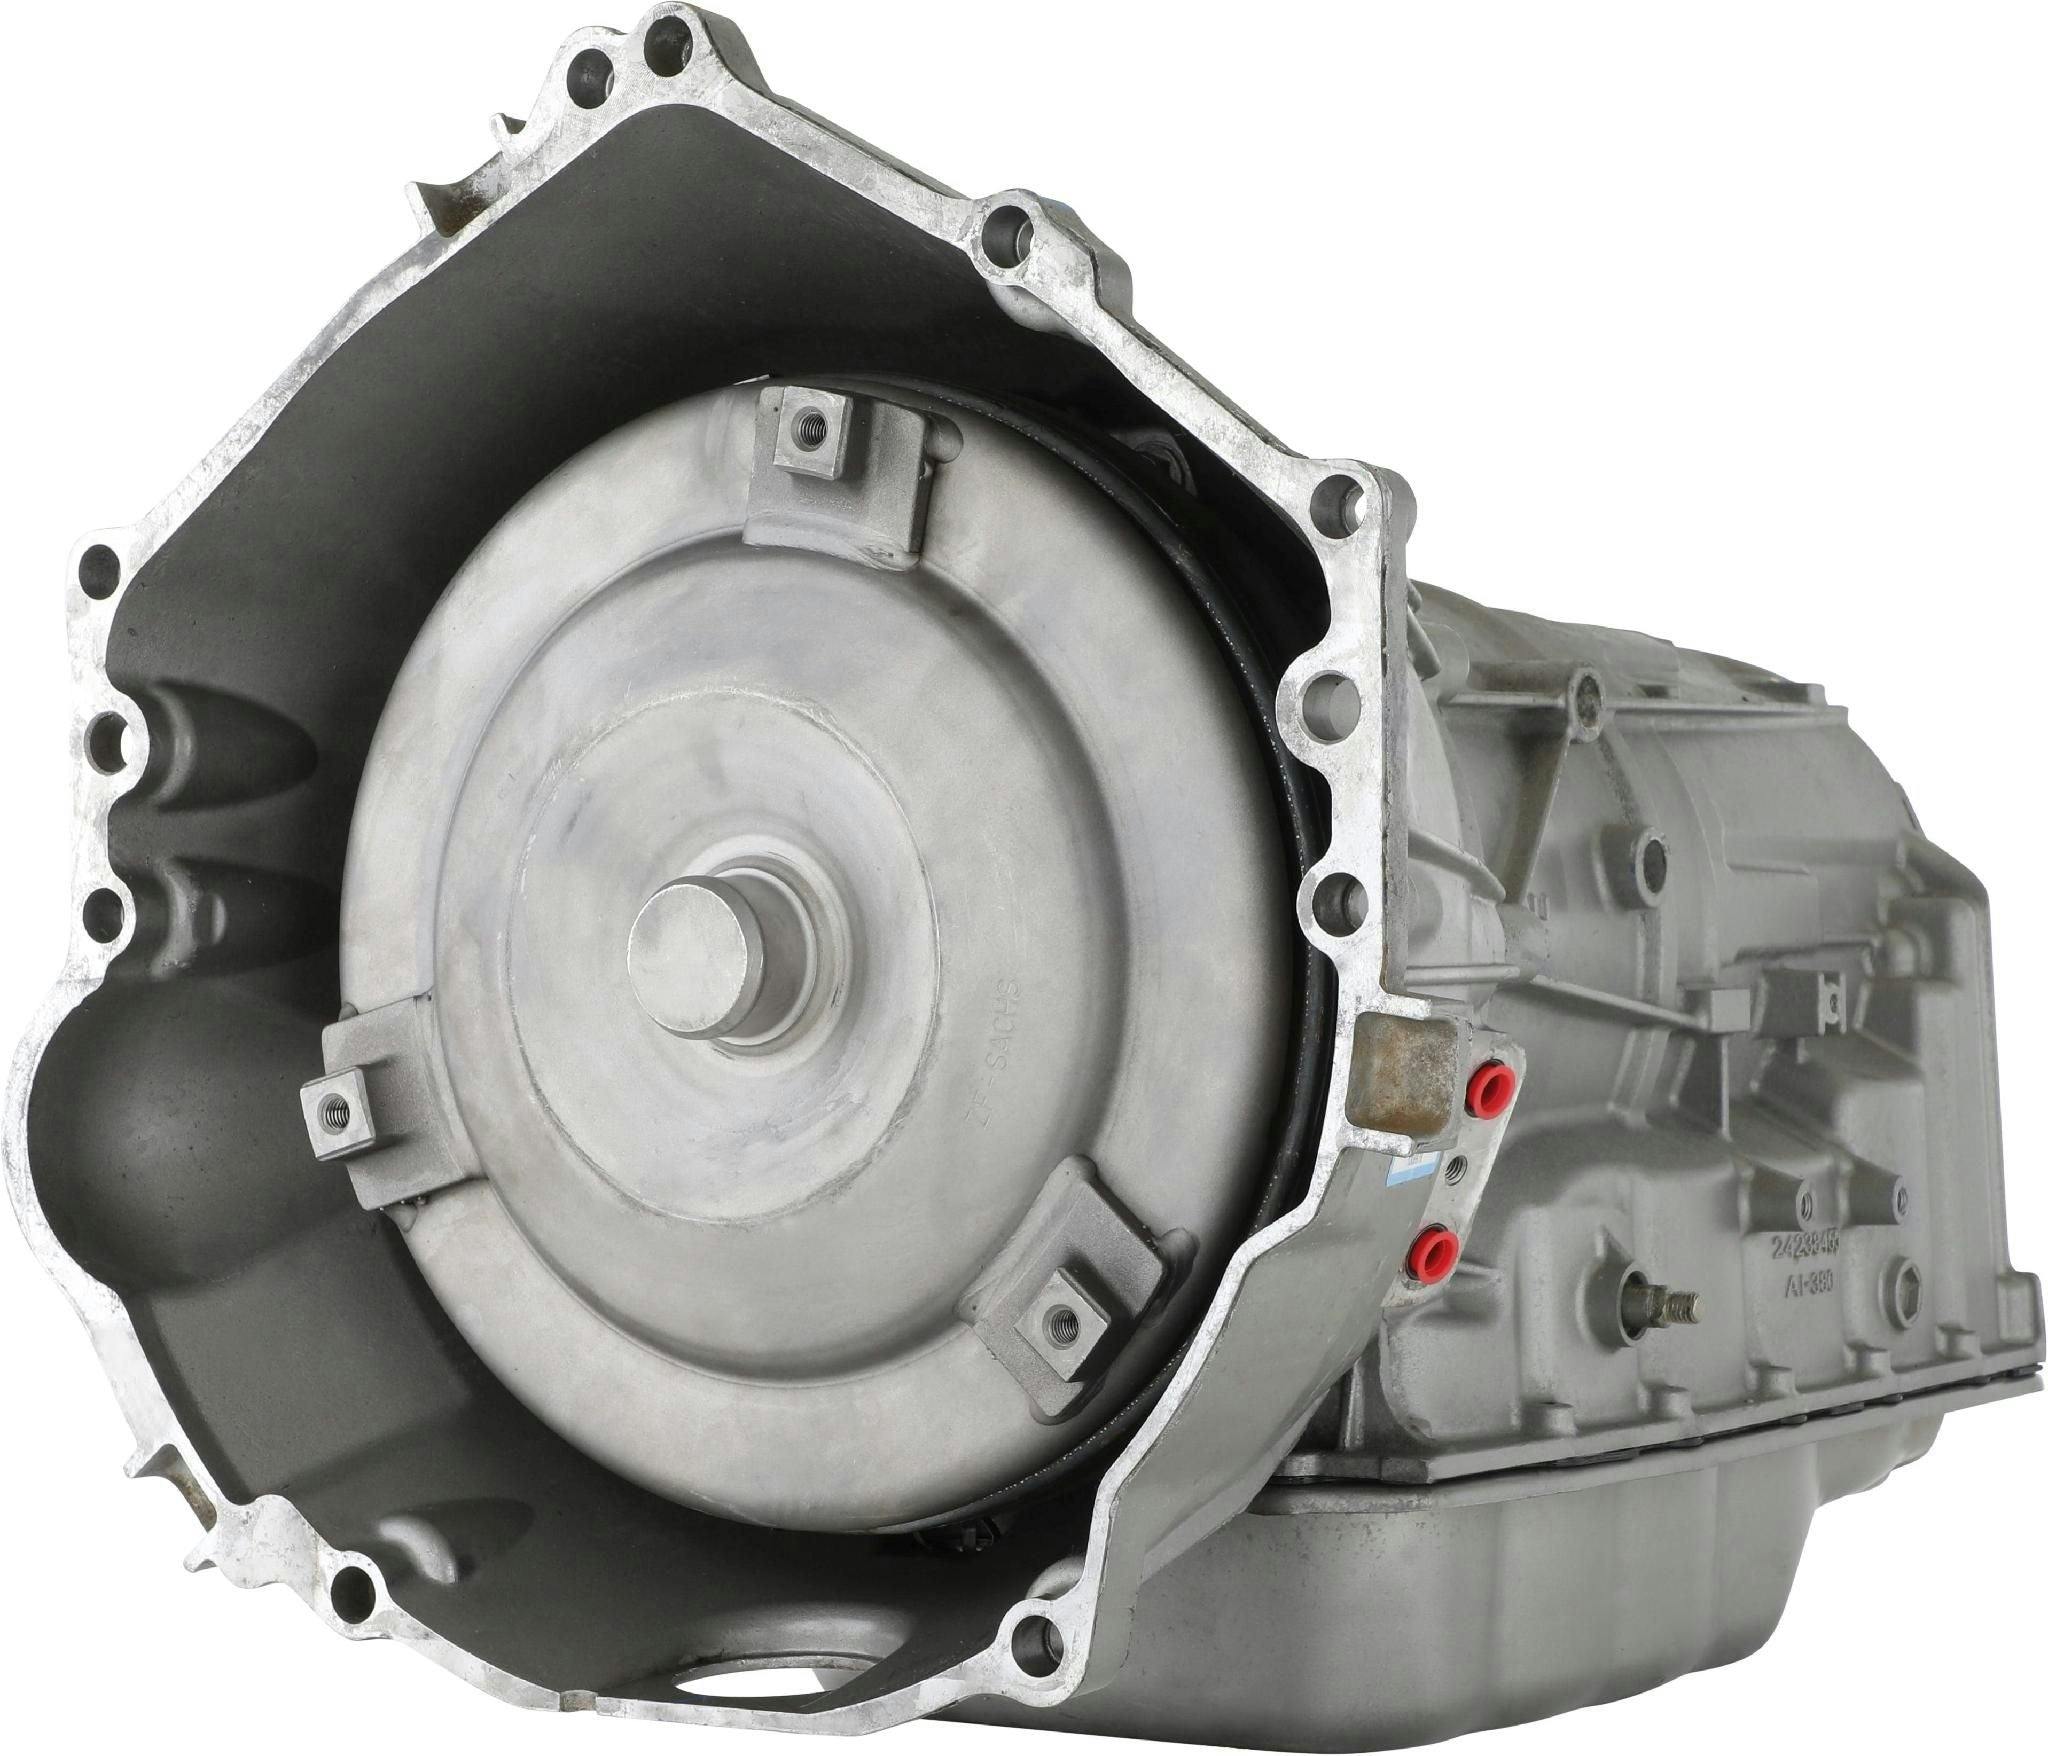 Automatic Transmission for 2015 Cadillac Escalade/Escalade ESV and GMC Yukon/Yukon XL RWD with 6.2L V8 Engine